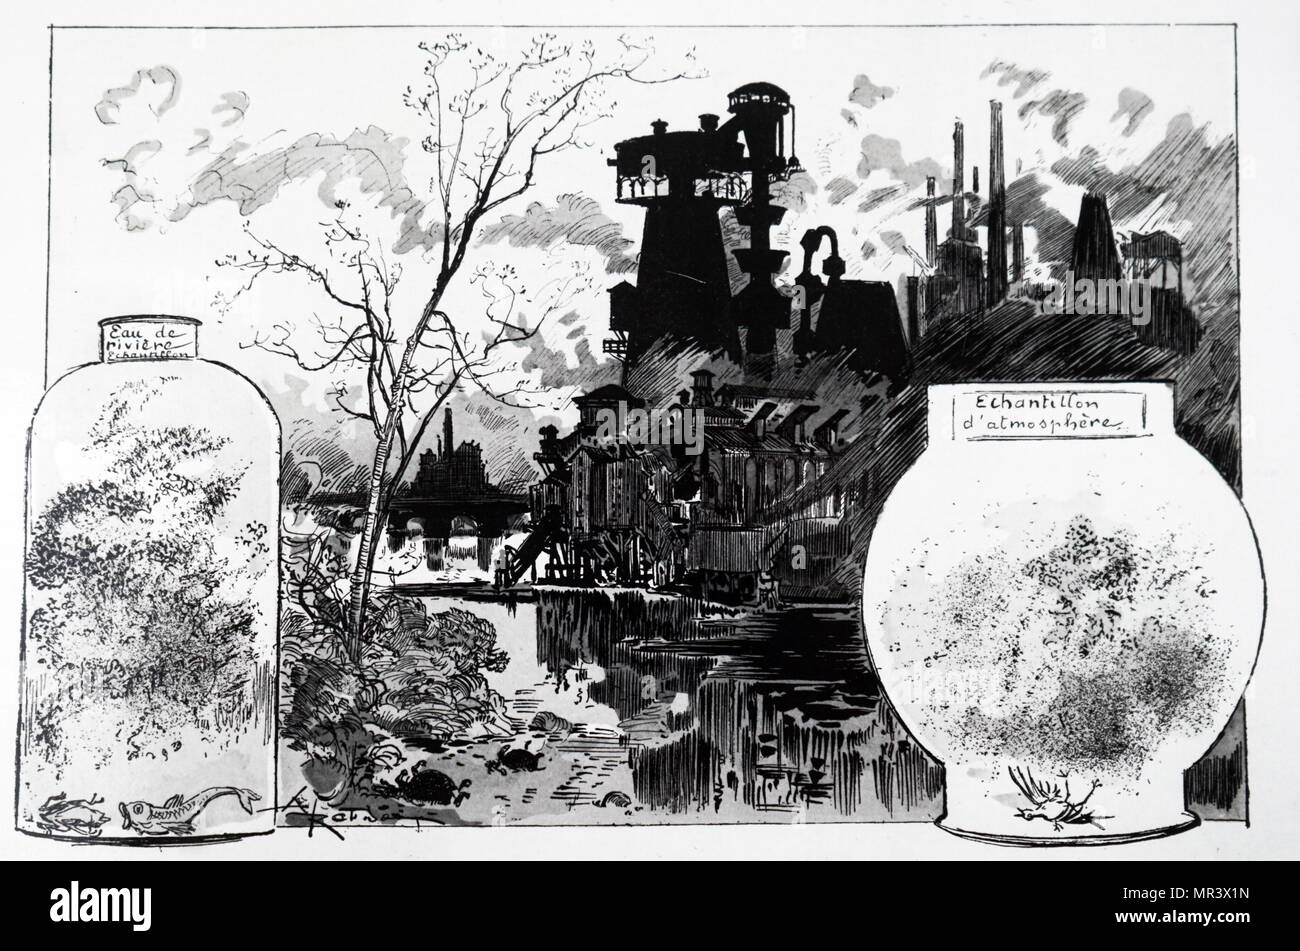 Gravur Darstellung Umweltverschmutzung während der 50er Jahre aussehen würde, wenn "Fortschritt" fortgesetzt. Vom 19. Jahrhundert Stockfoto